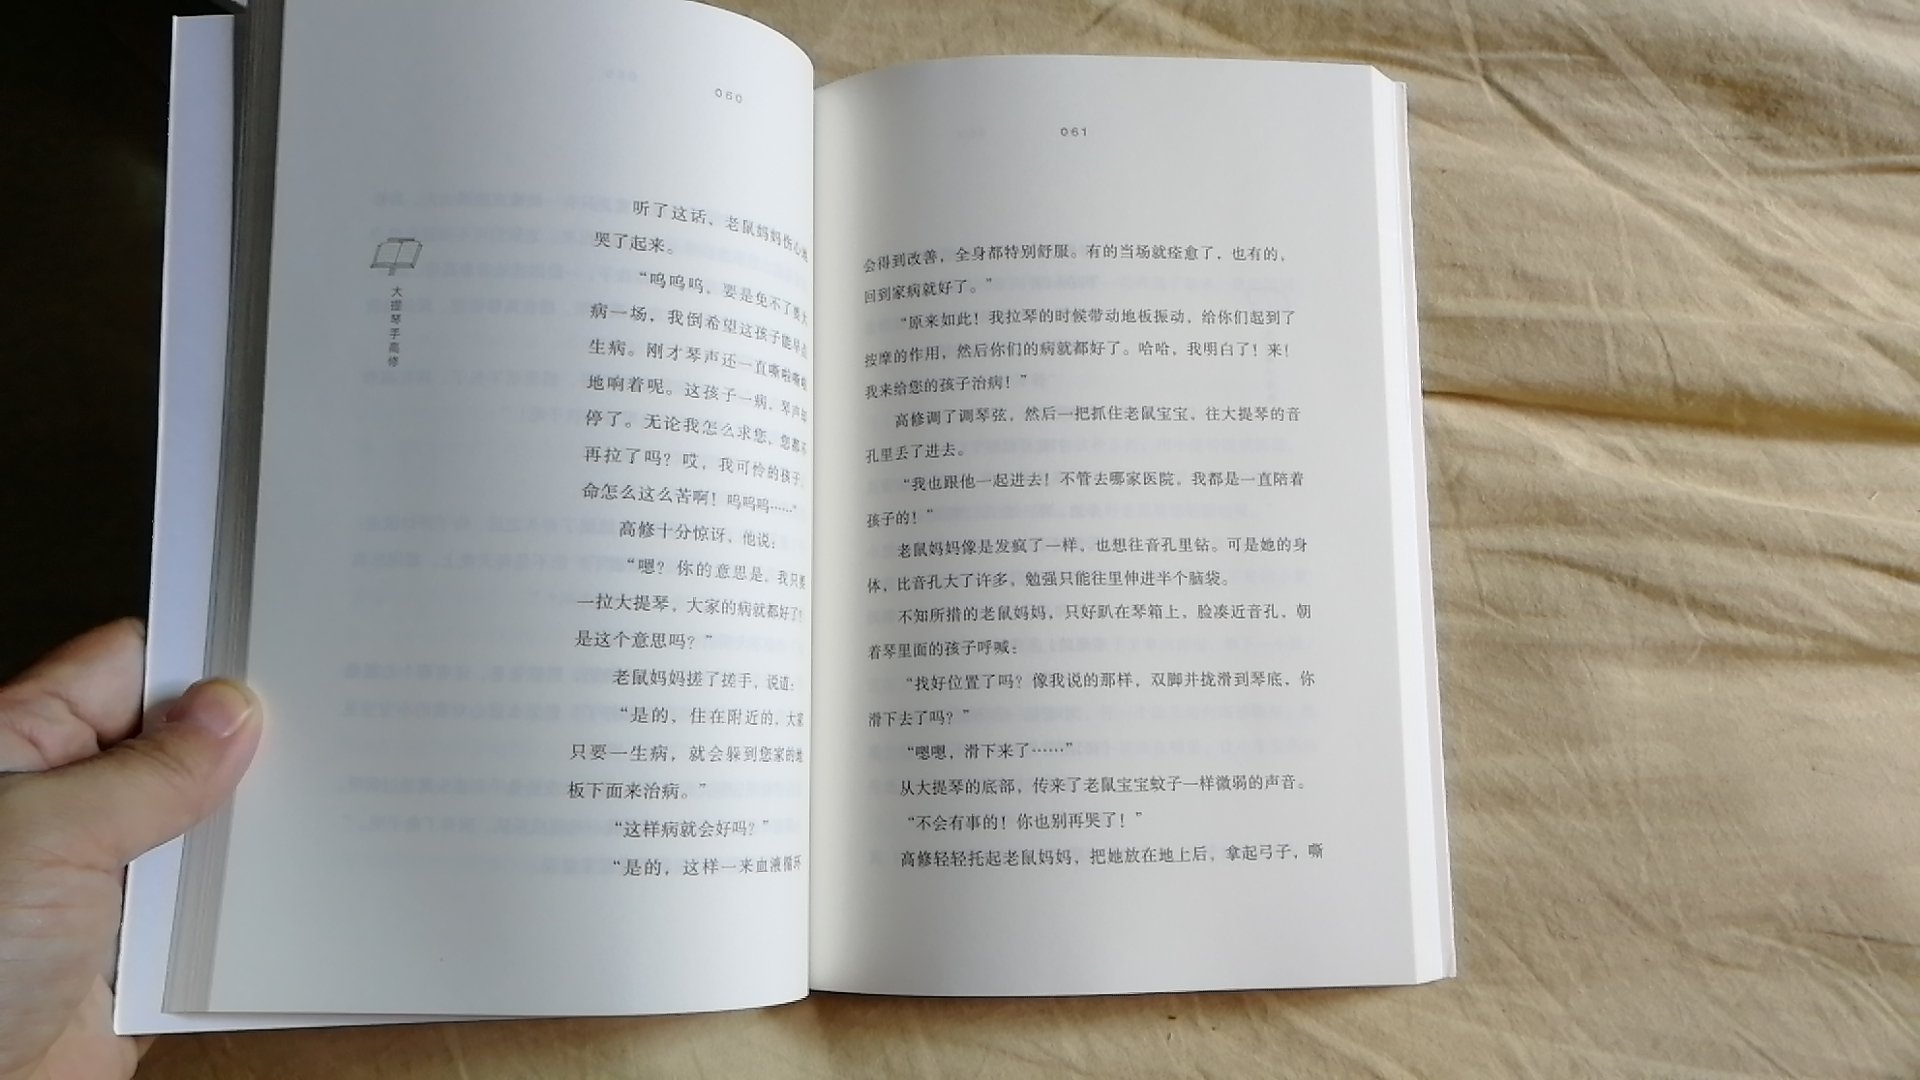 宫泽贤治的书一直想看，这次虽然单本，但让我凑齐了五本一套，真的很不错。